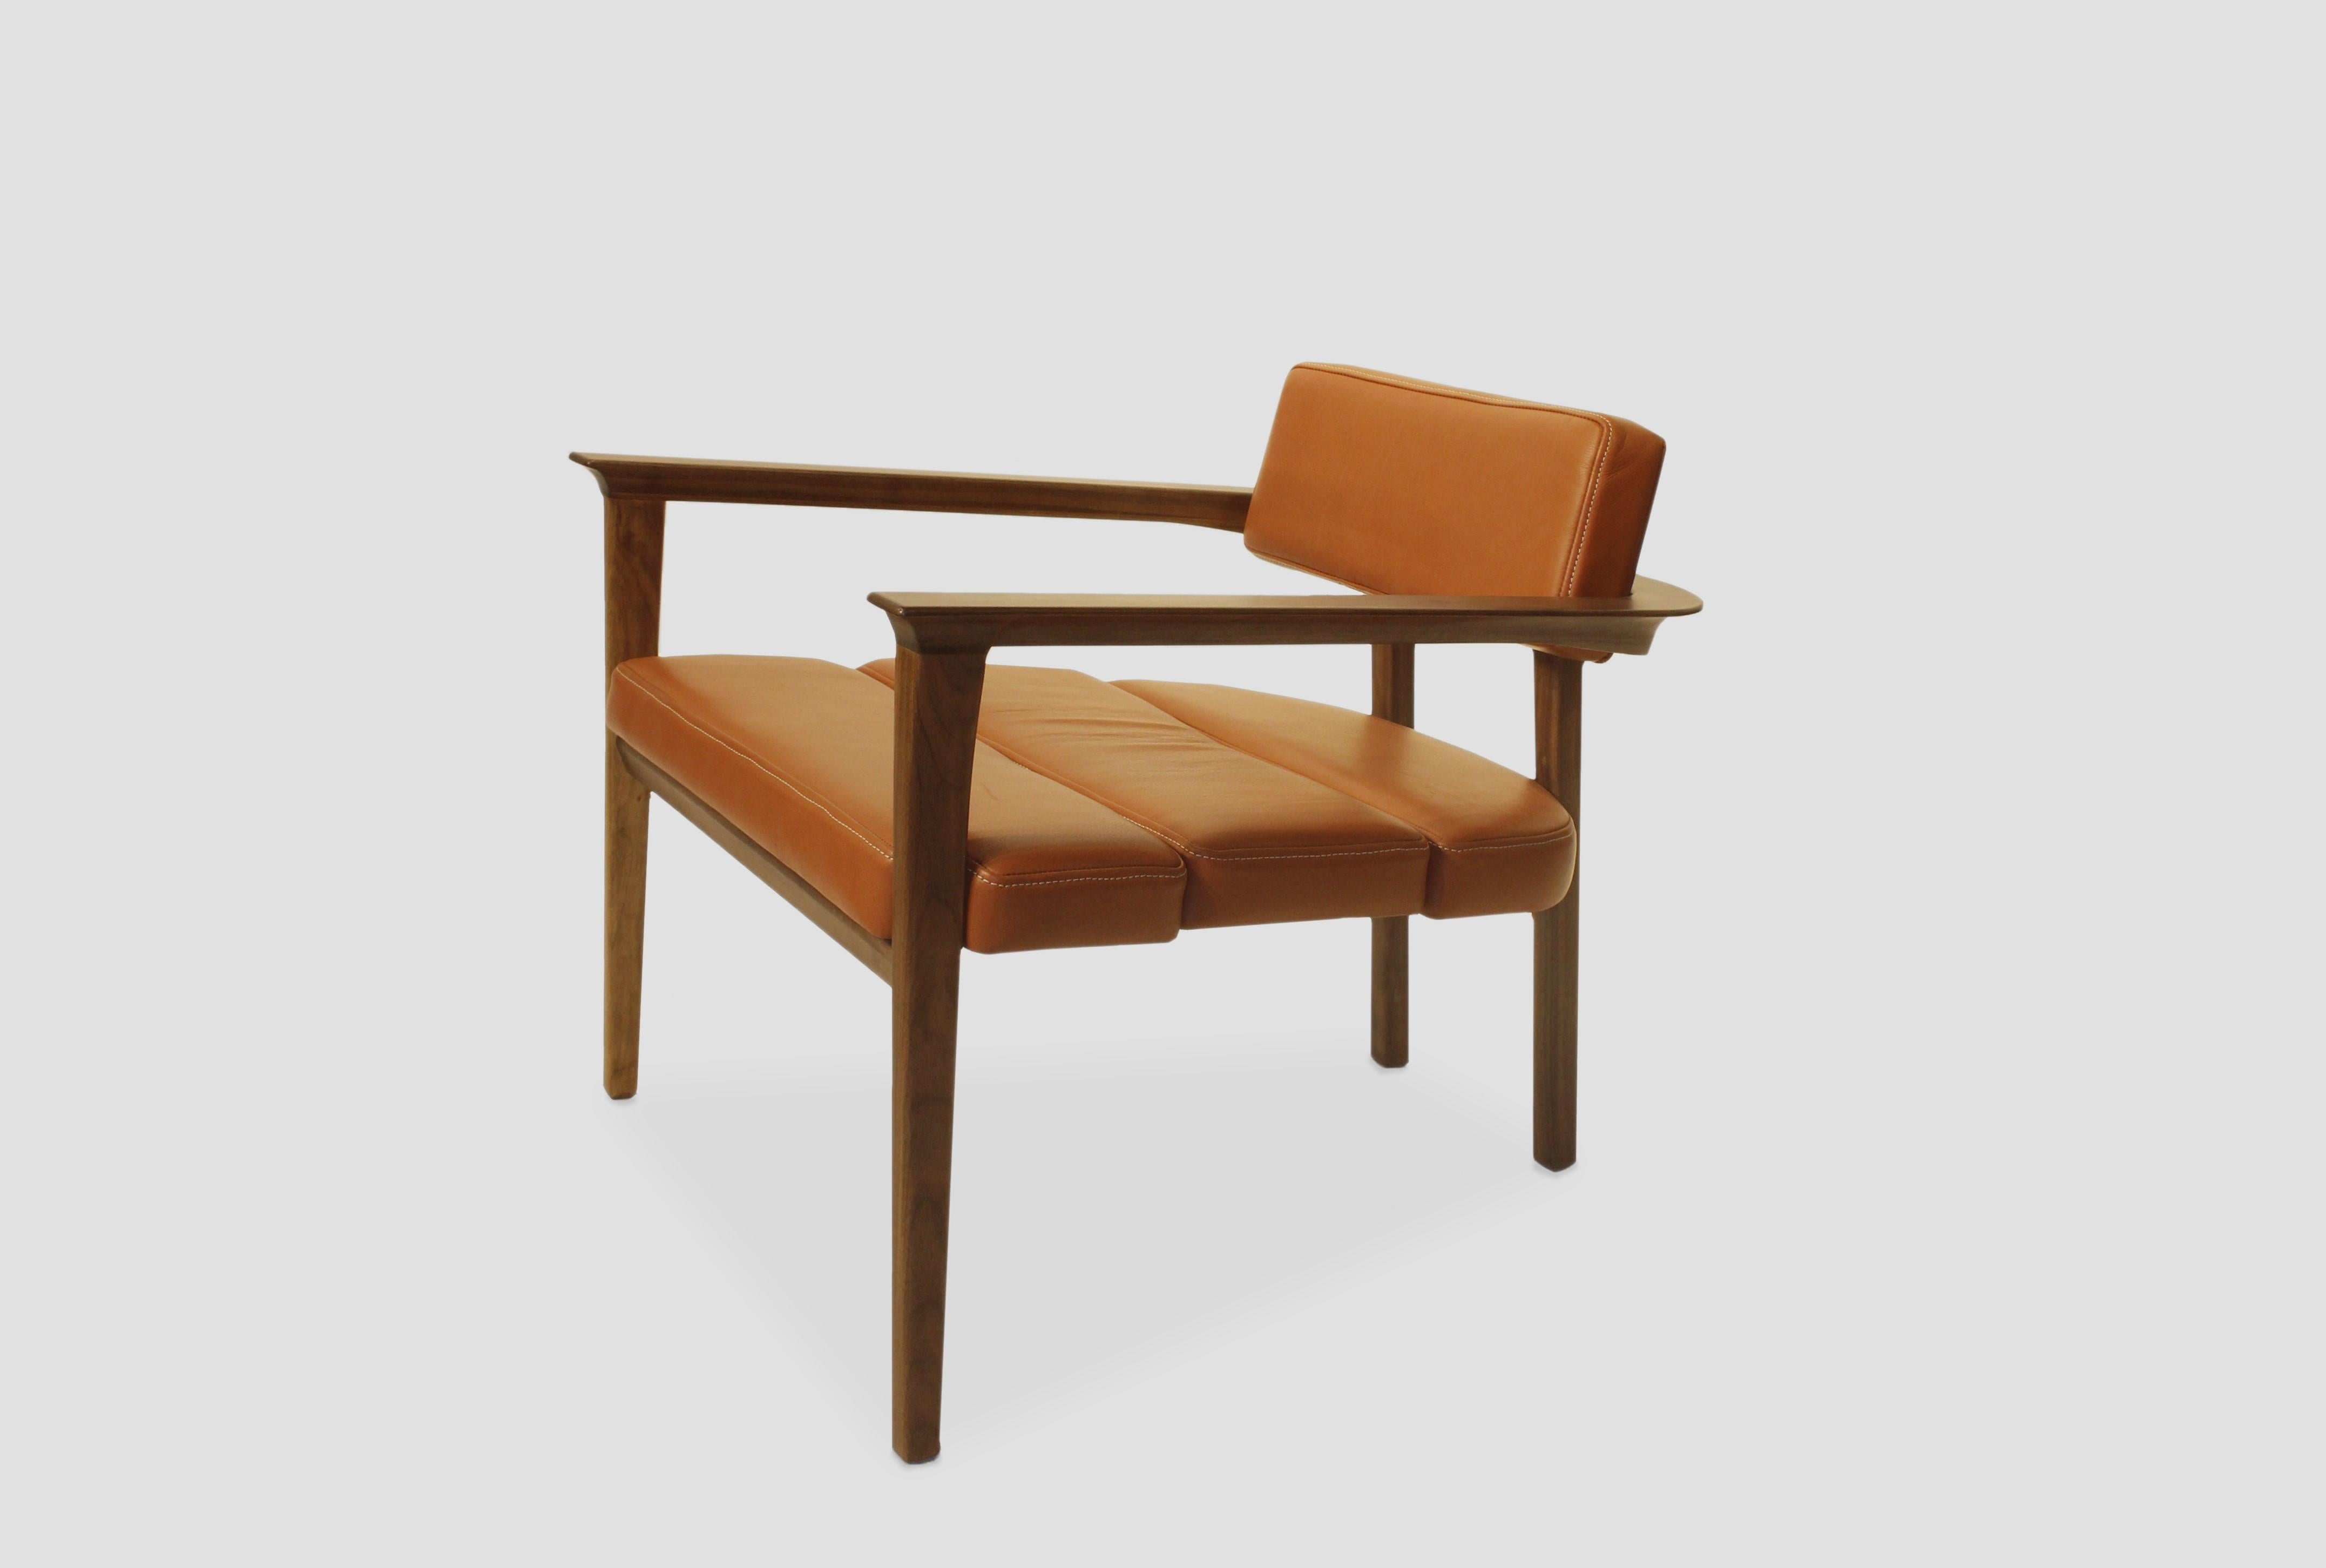 Ensemble de 2 fauteuils Klee par Arturo Verástegui
Dimensions : D 72 x L 76 x H 70 cm
Matériaux : bois de noyer, cuir.

Fauteuil en noyer vert massif, cuir.

Arturo Verástegui est le directeur et fondateur de Breuer depuis 2015. Arturo a commencé sa